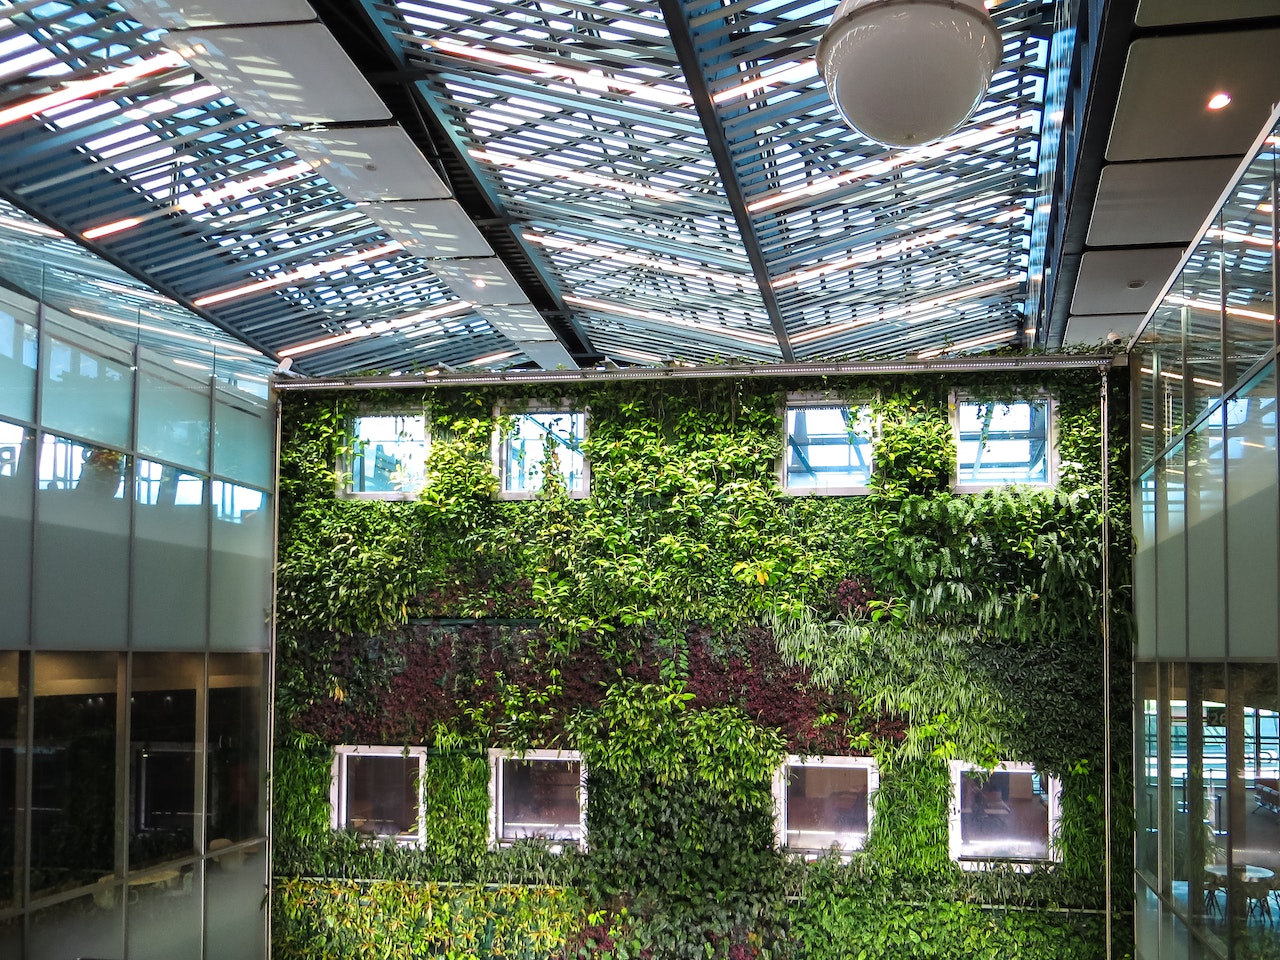 Grand mur végétal dans un bâtiment